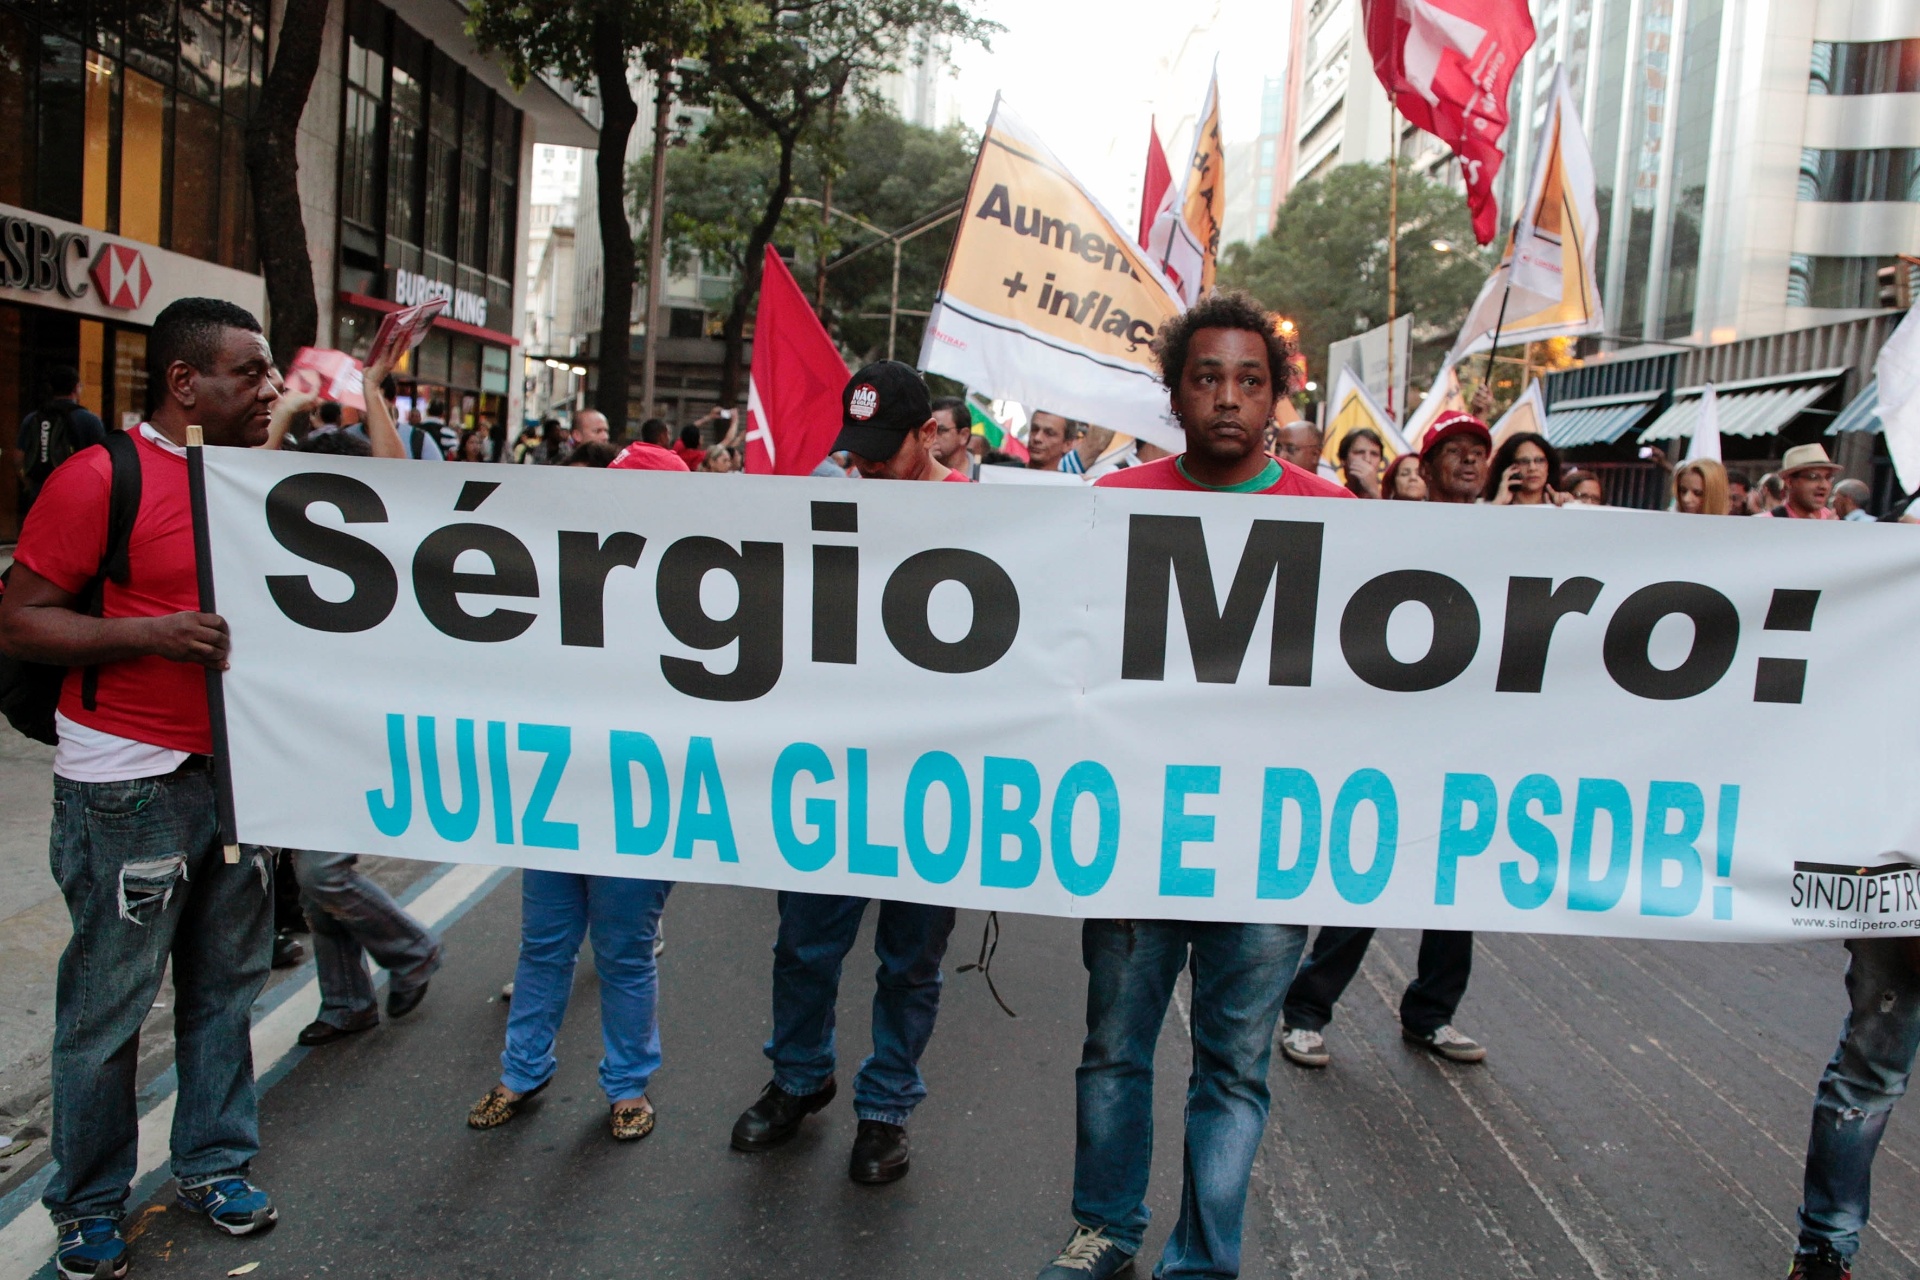 Resultado de imagem para Moro juiz da Globo e do PSDB